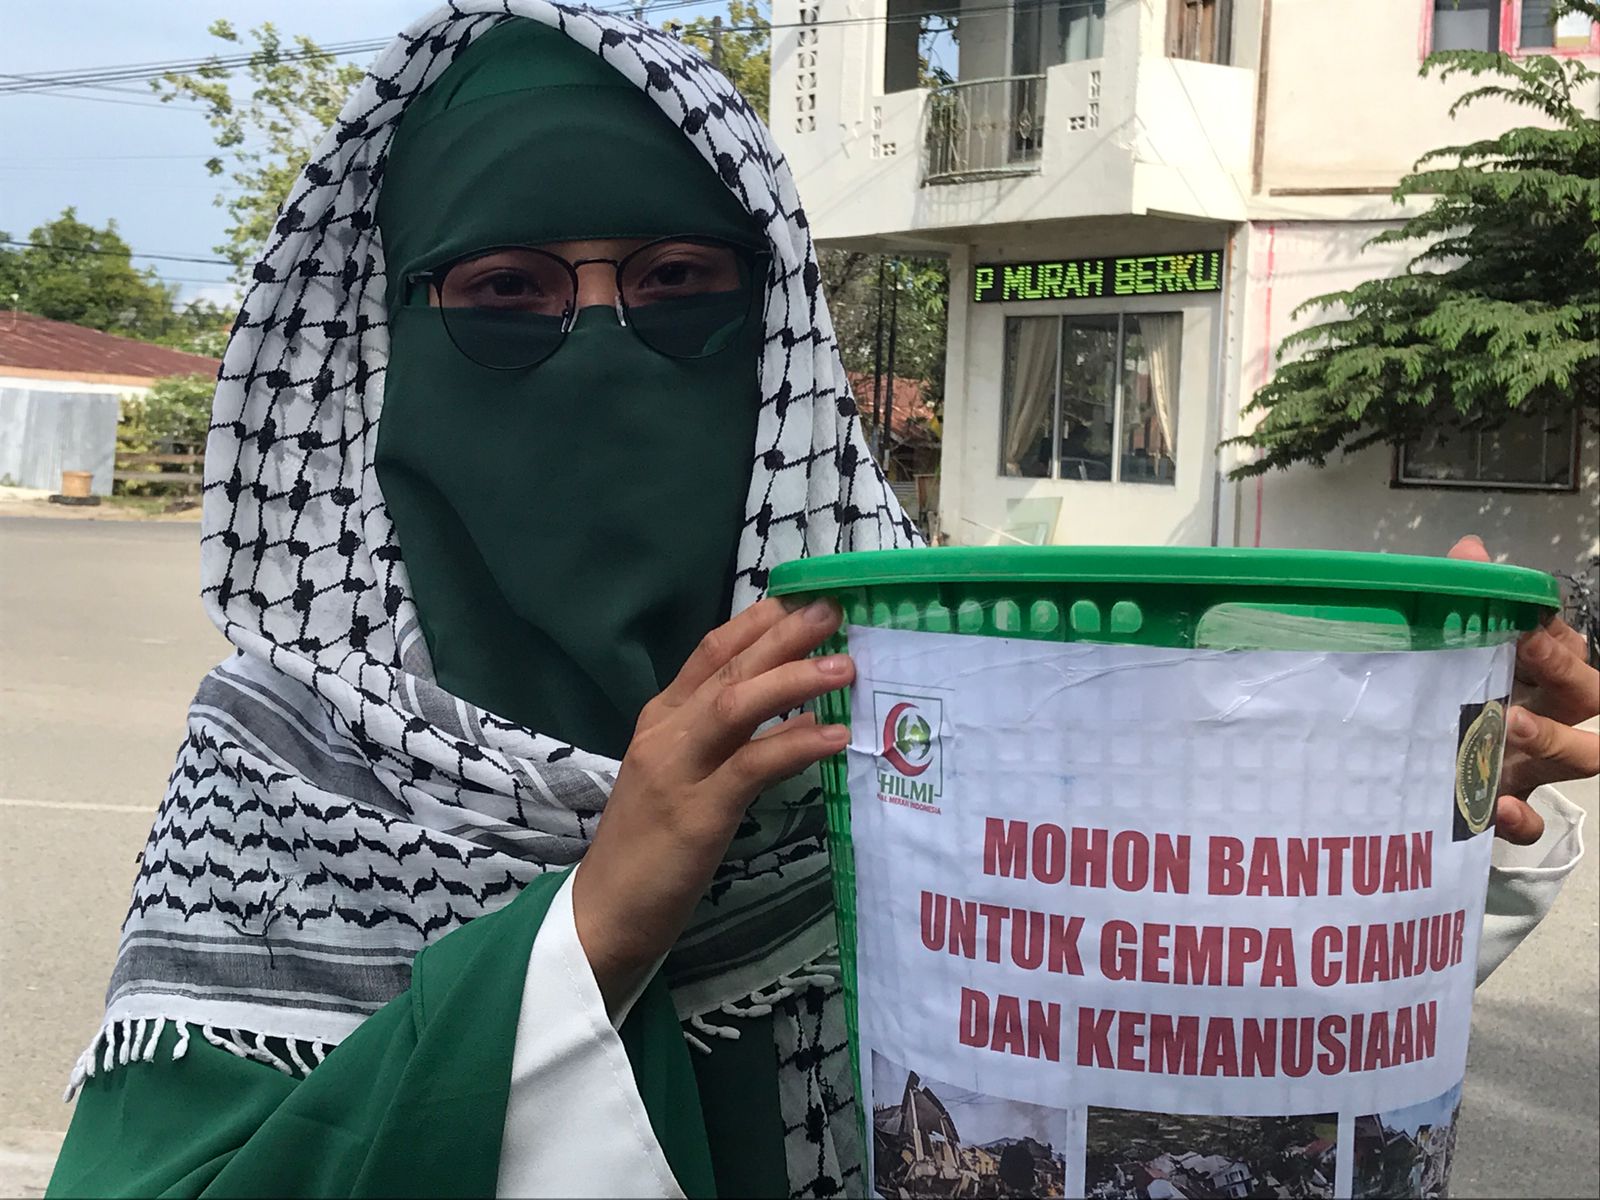 Mujahiddah IMAM Galang Dana untuk Korban Gempa di Cianjur